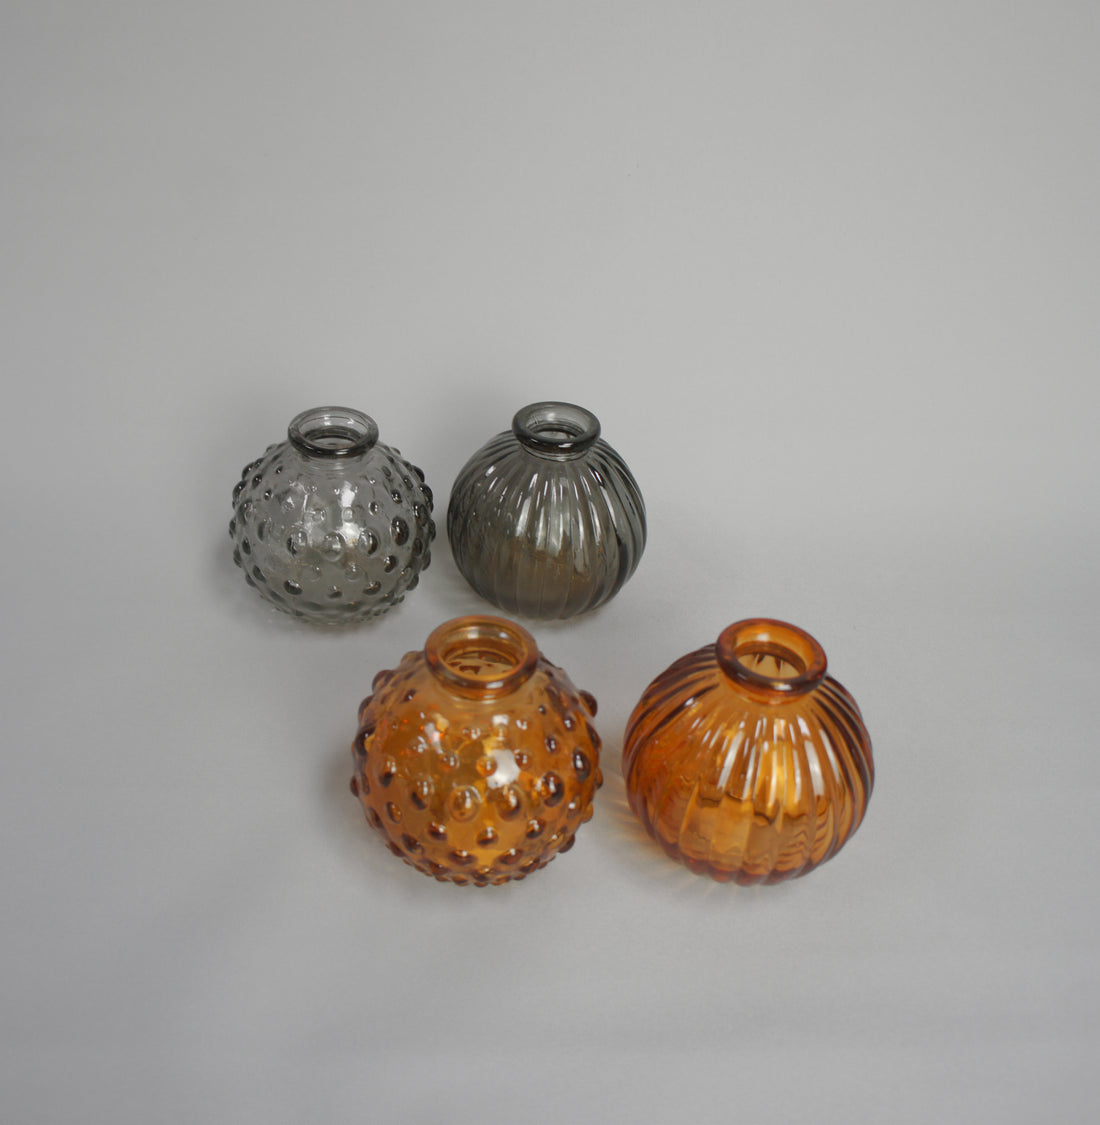 Glasvase, kugelig in 2 Farben: Orange und Grau, als Set, 2-tlg. erhältlich